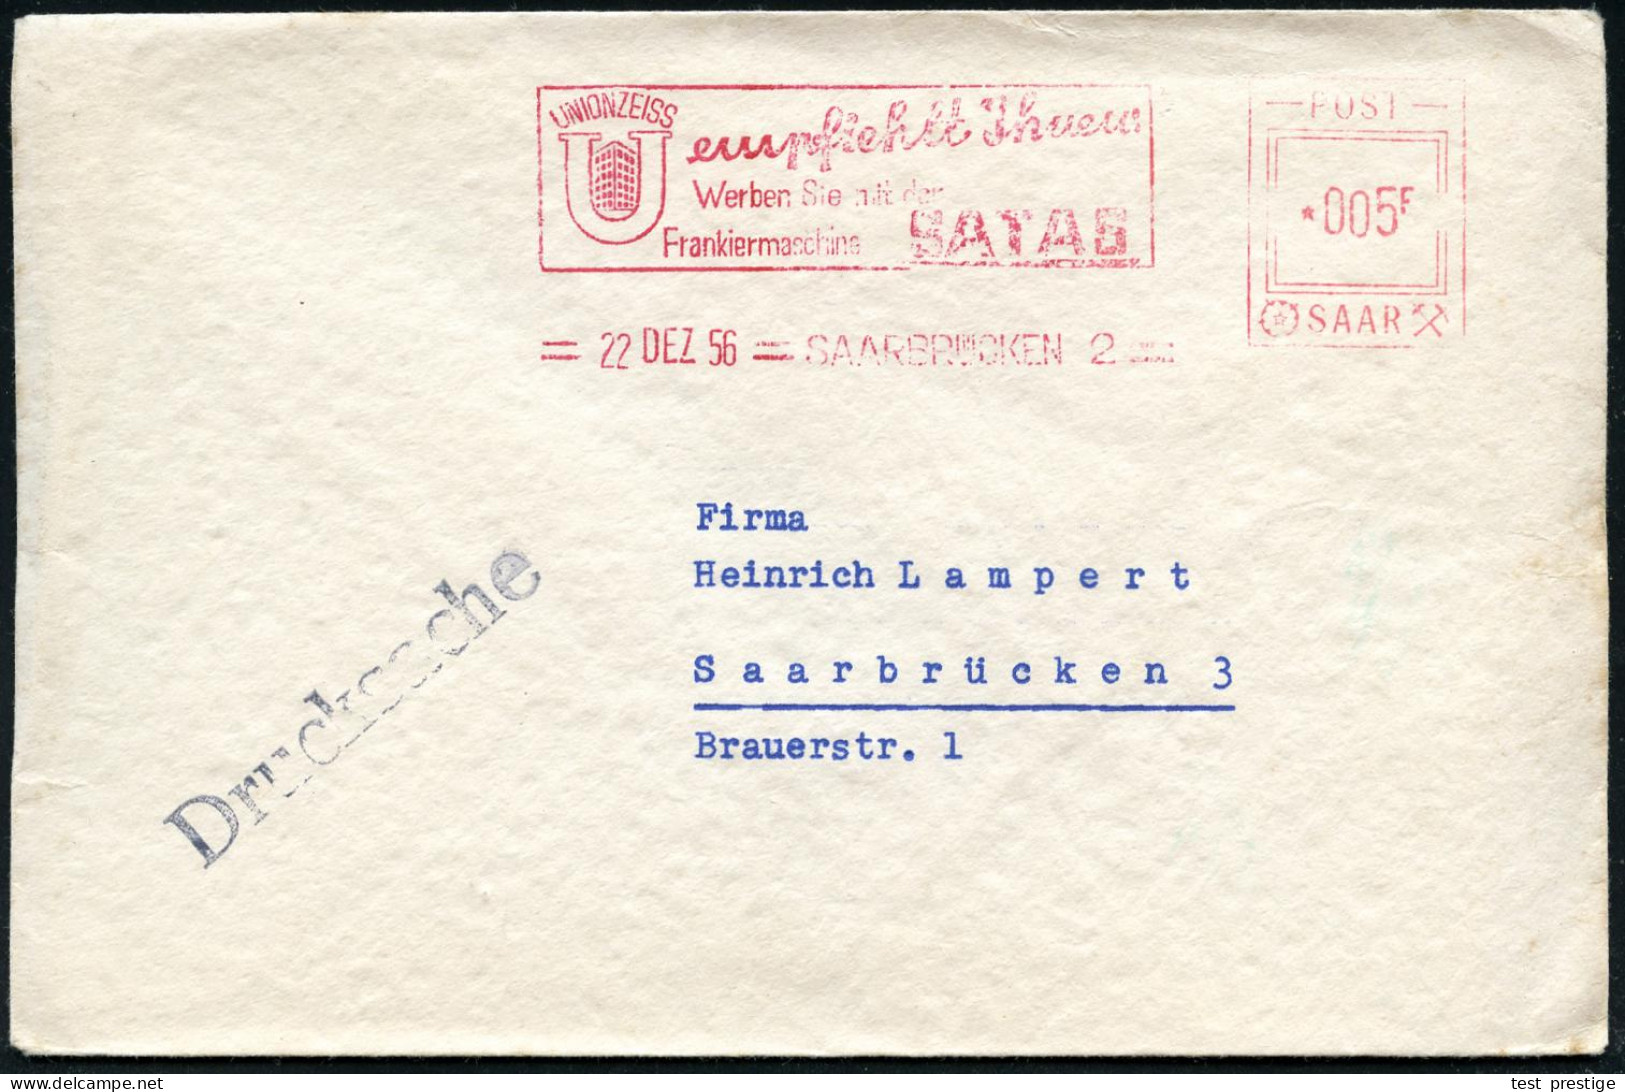 SAARBRÜCKEN 2/ UNION ZEISS../ Werben Sie Mit Der/ Frankiermaschine SATAS 1956 (22.12.) AFS Satas "POST SAAR" 005 F. (Fir - Otros